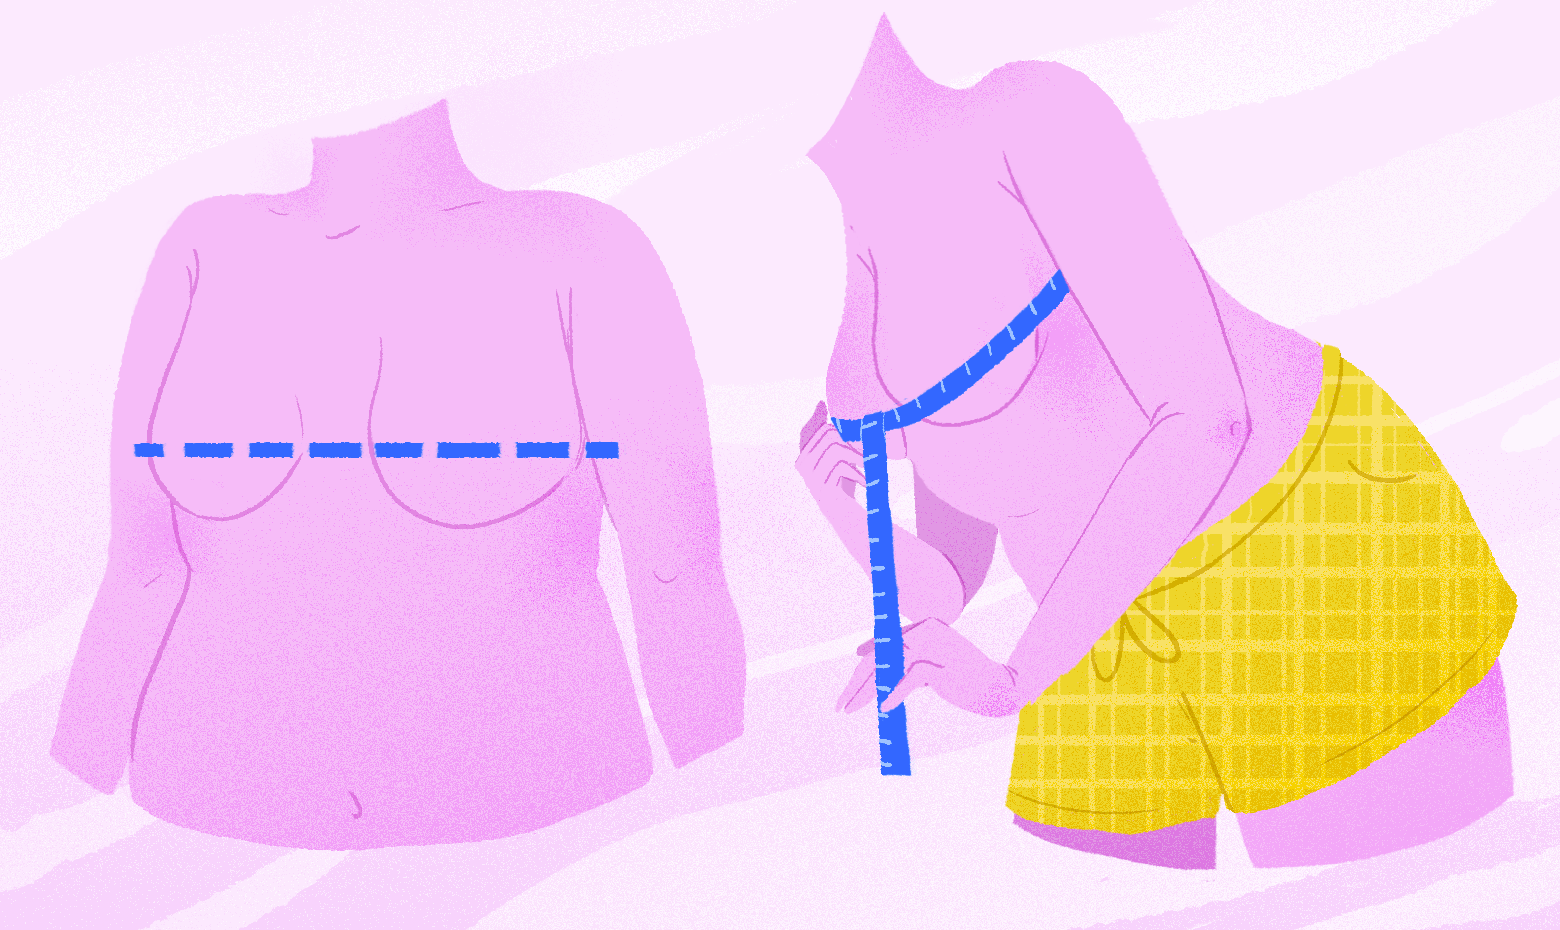 Easy Way To Measure Bra Size  Measure bra size, Bra sizes, Bra size charts